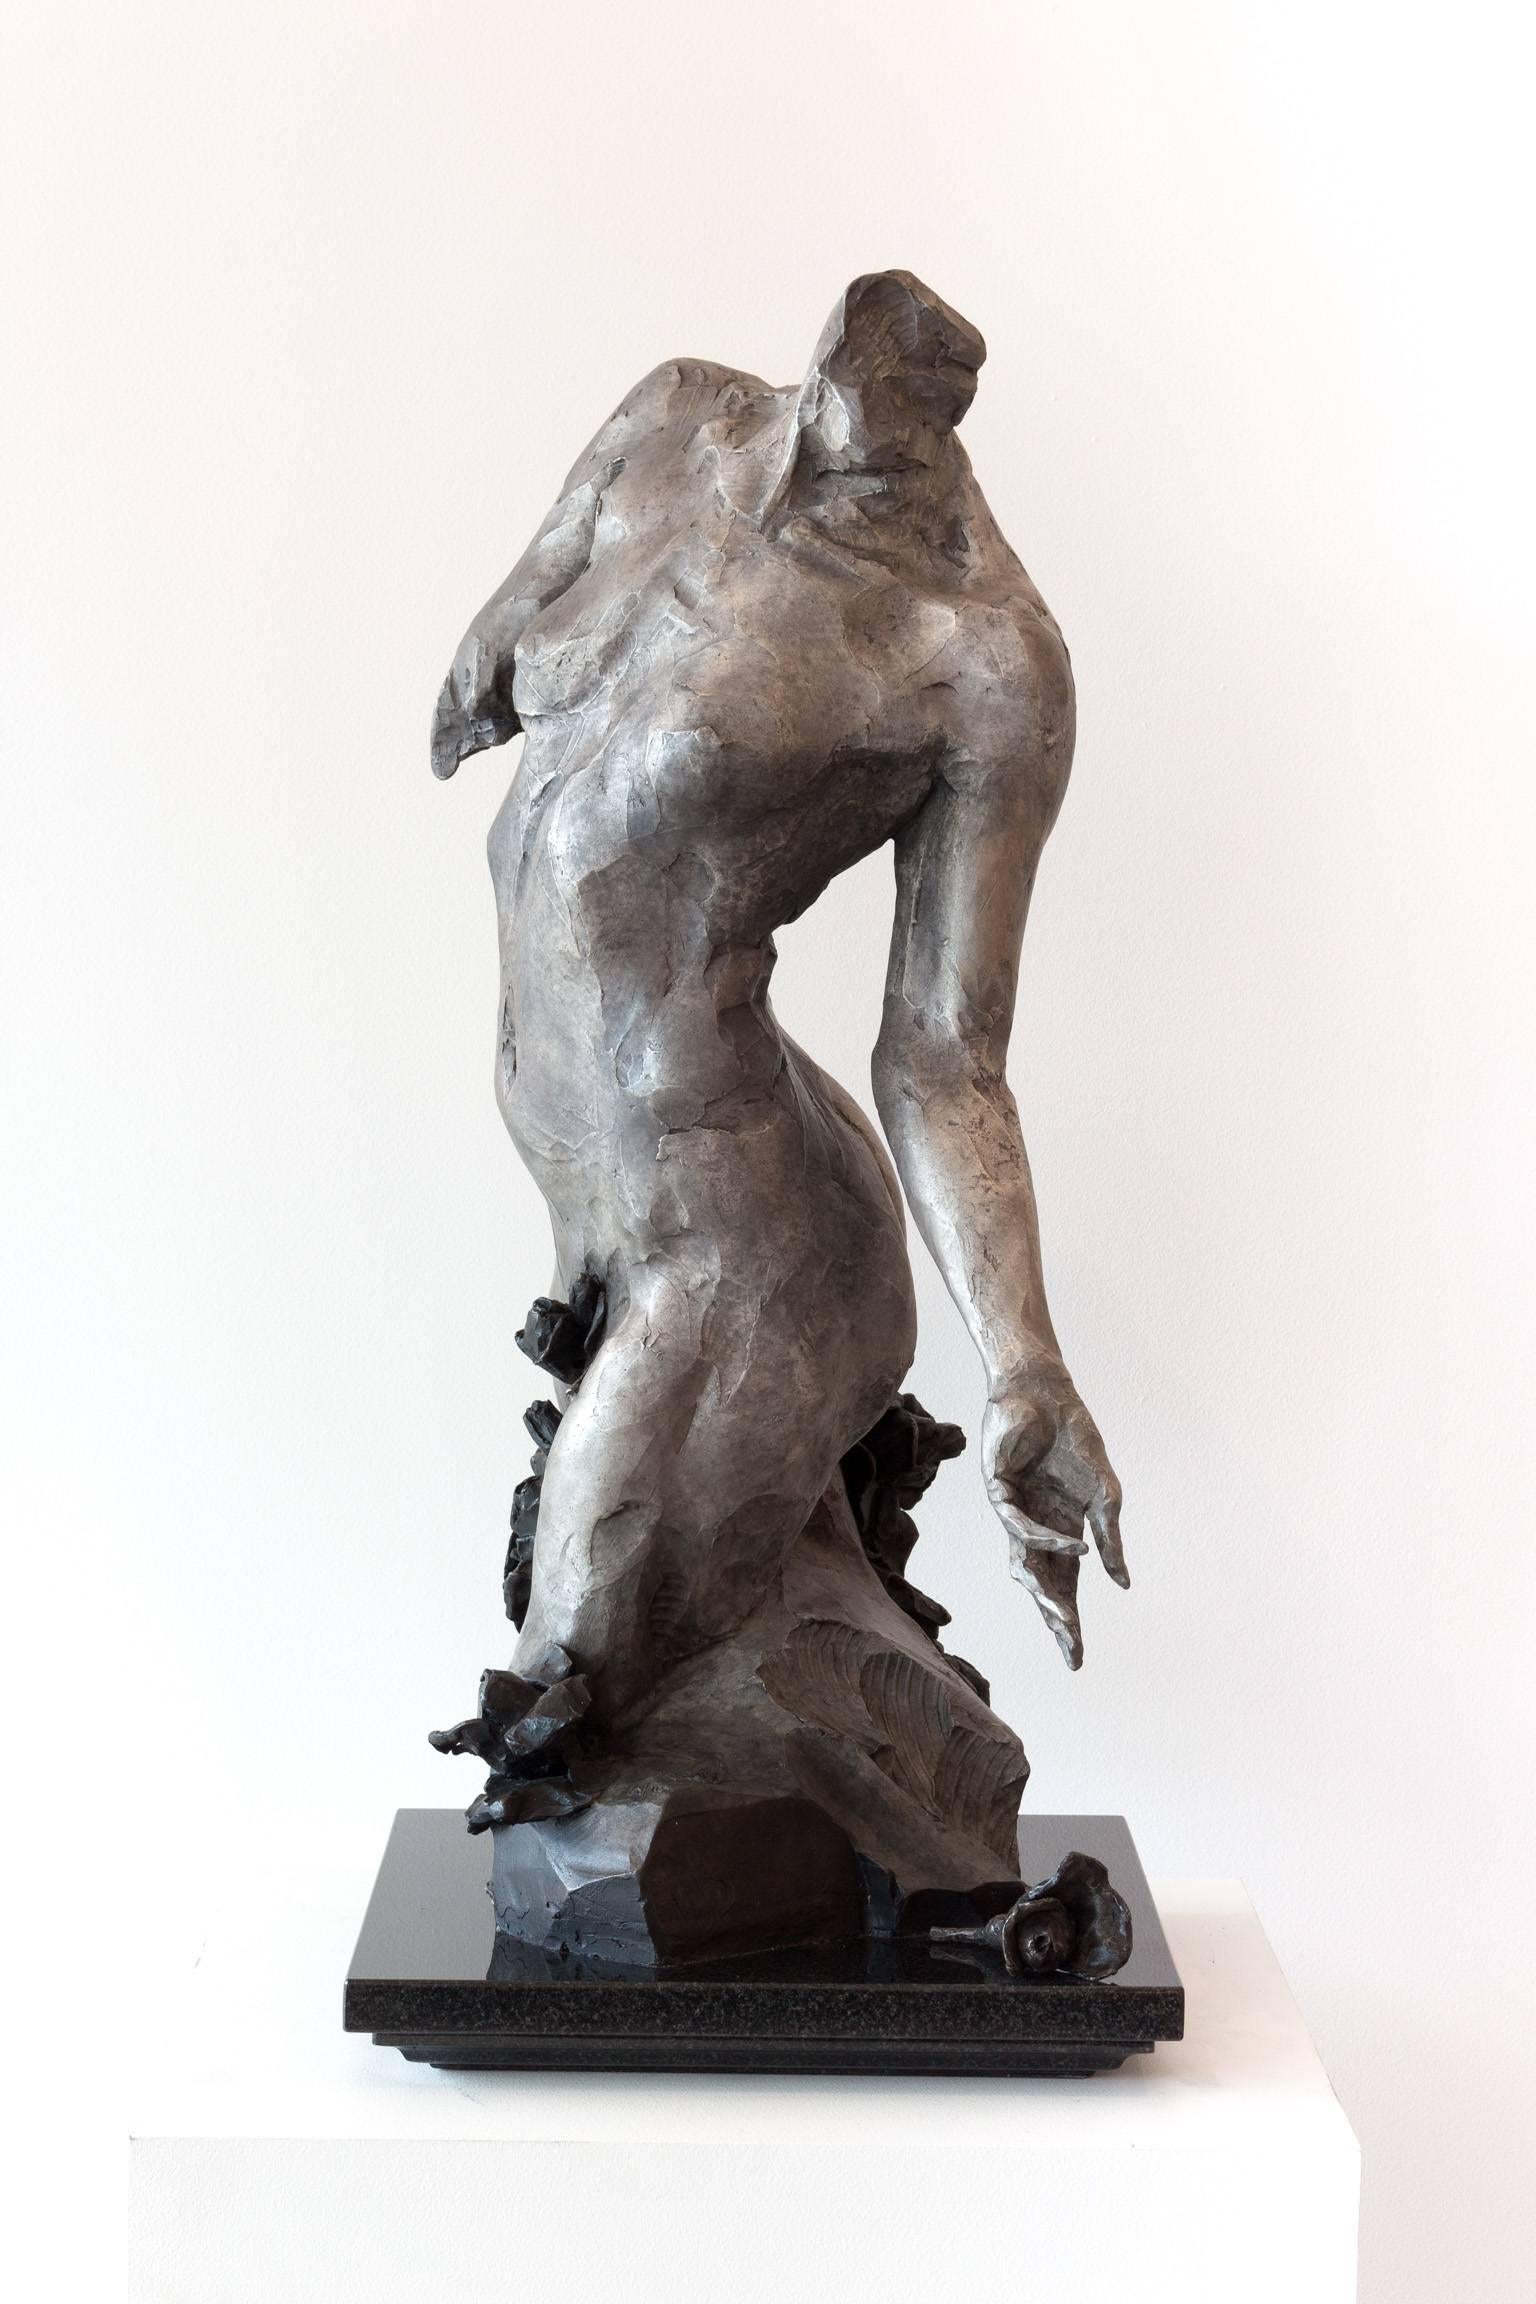 Desiderata - Sculpture by Larry Schueckler